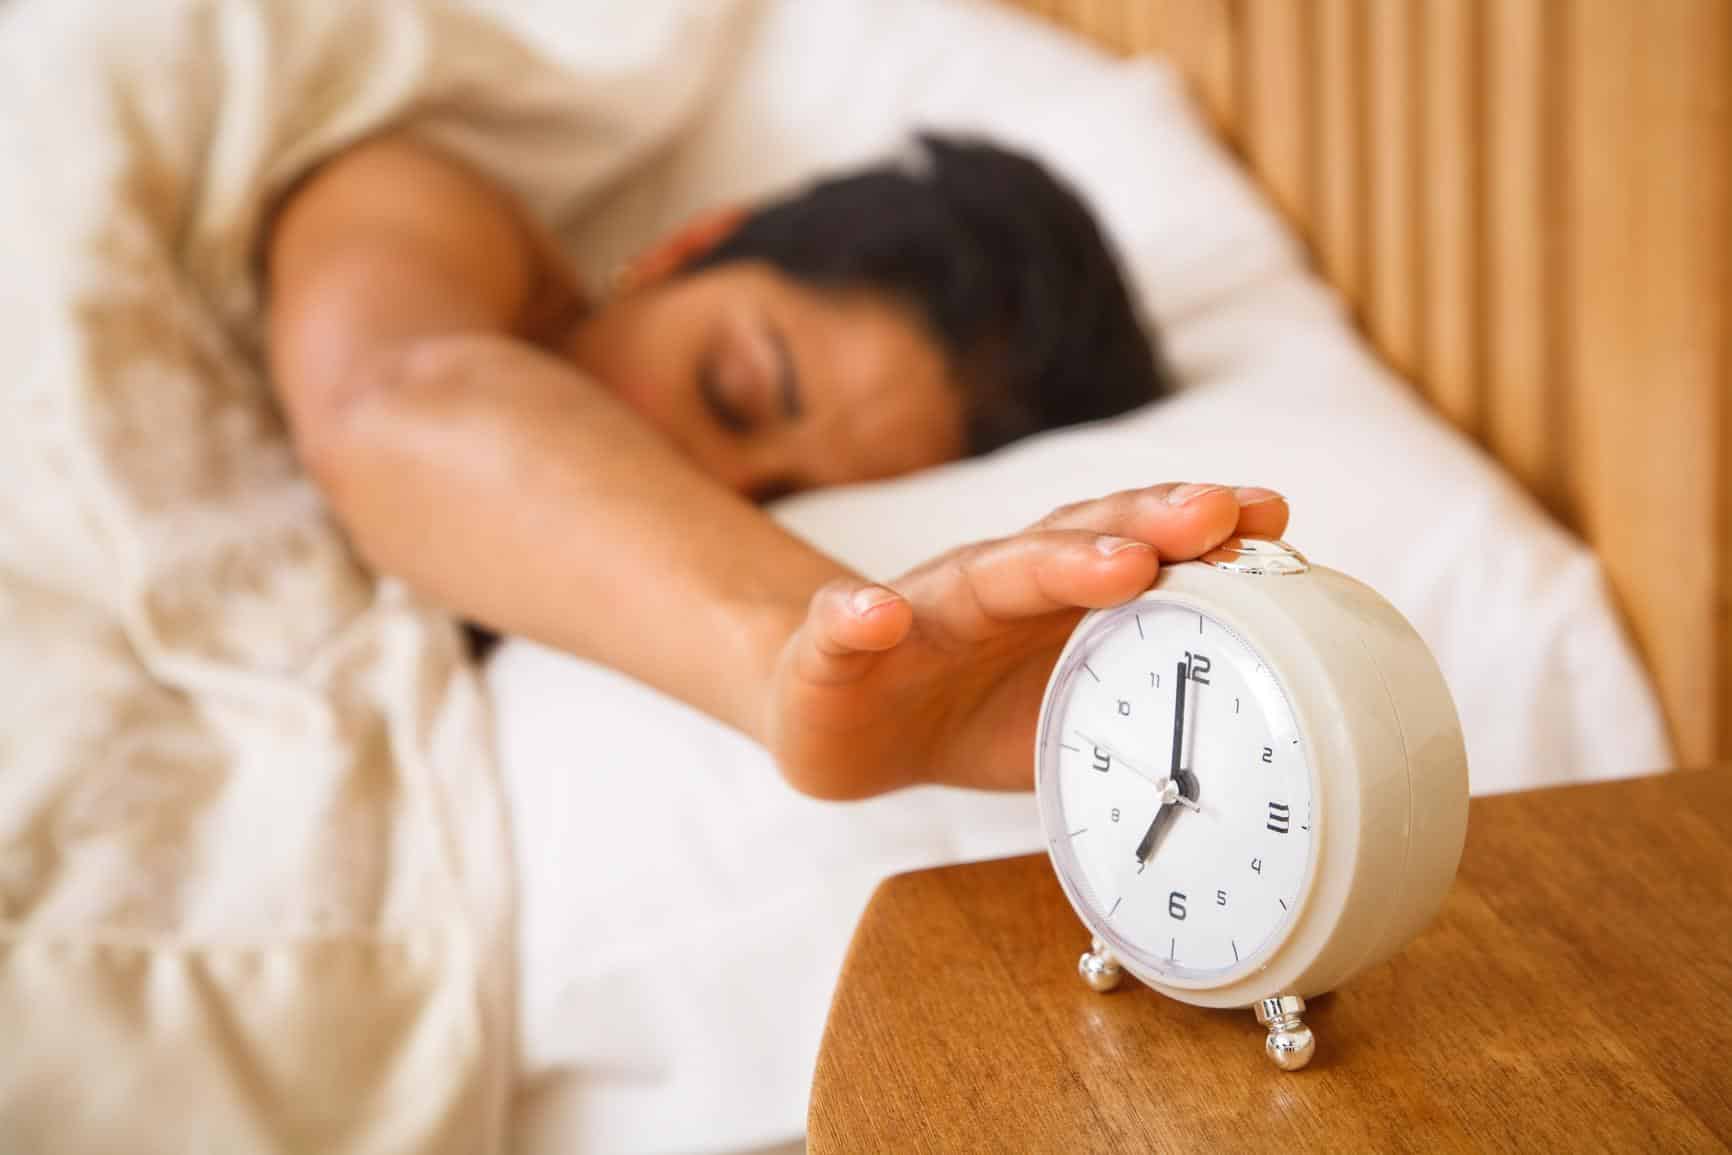 Spánku prospěje absence kávy, procházka nebo kousek česneku